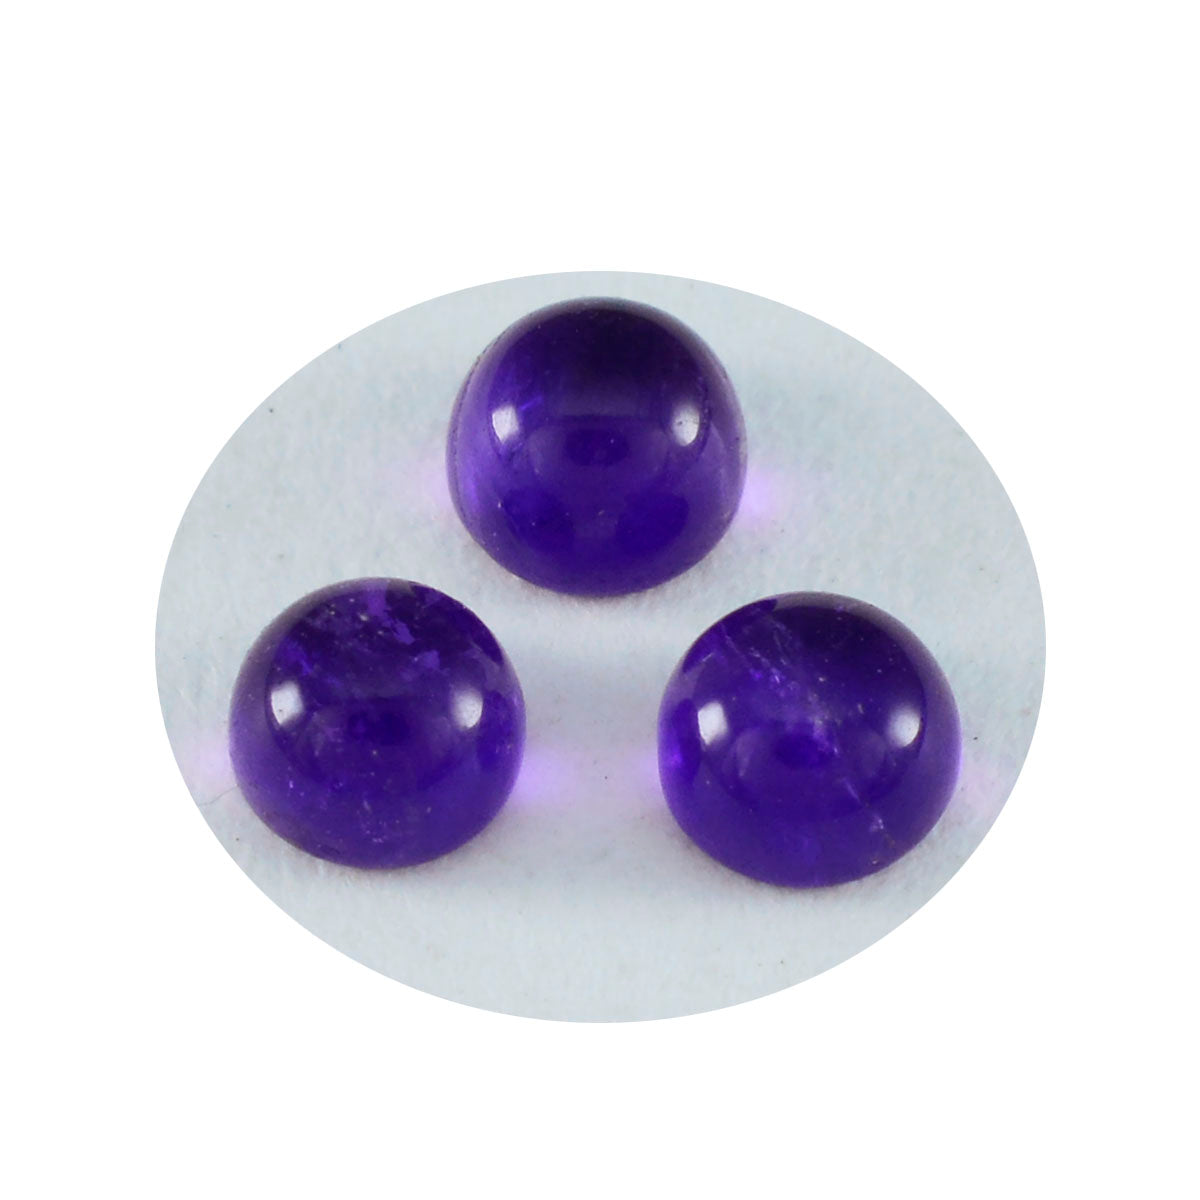 Riyogems 1pc cabochon d'améthyste violet 6x6mm forme ronde beauté qualité pierre en vrac